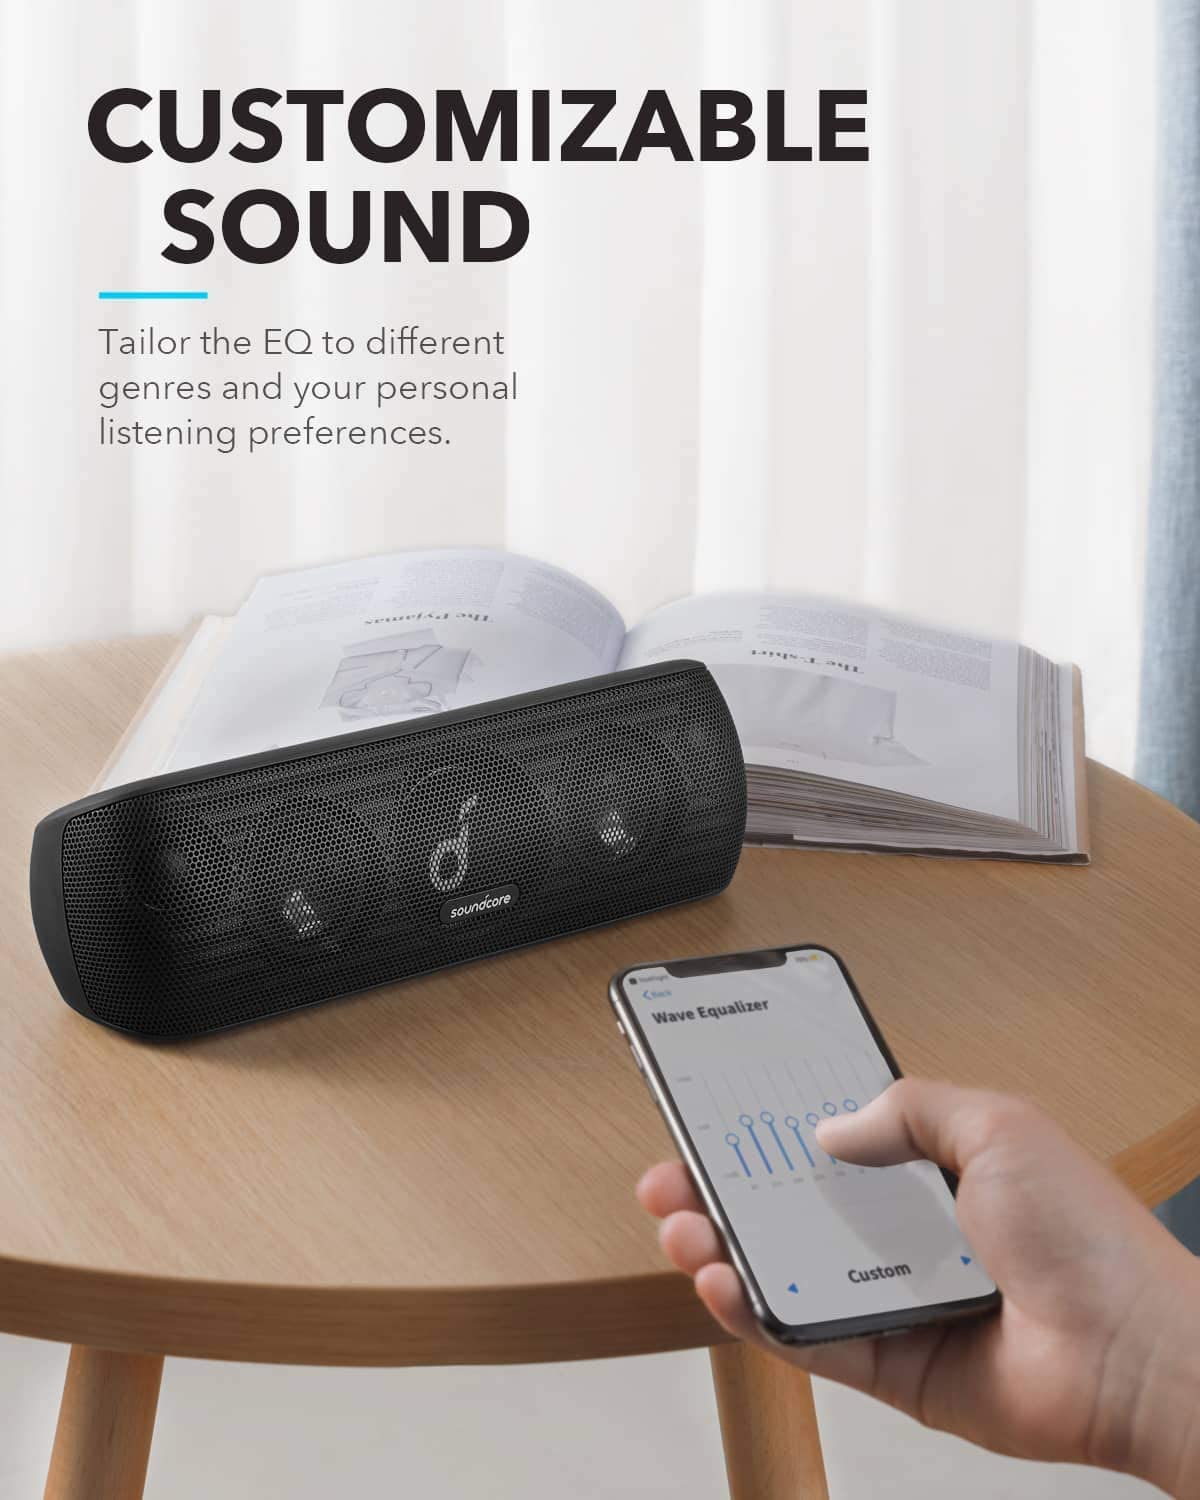 Anker Soundcore Motion & Bluetooth Speaker - Black